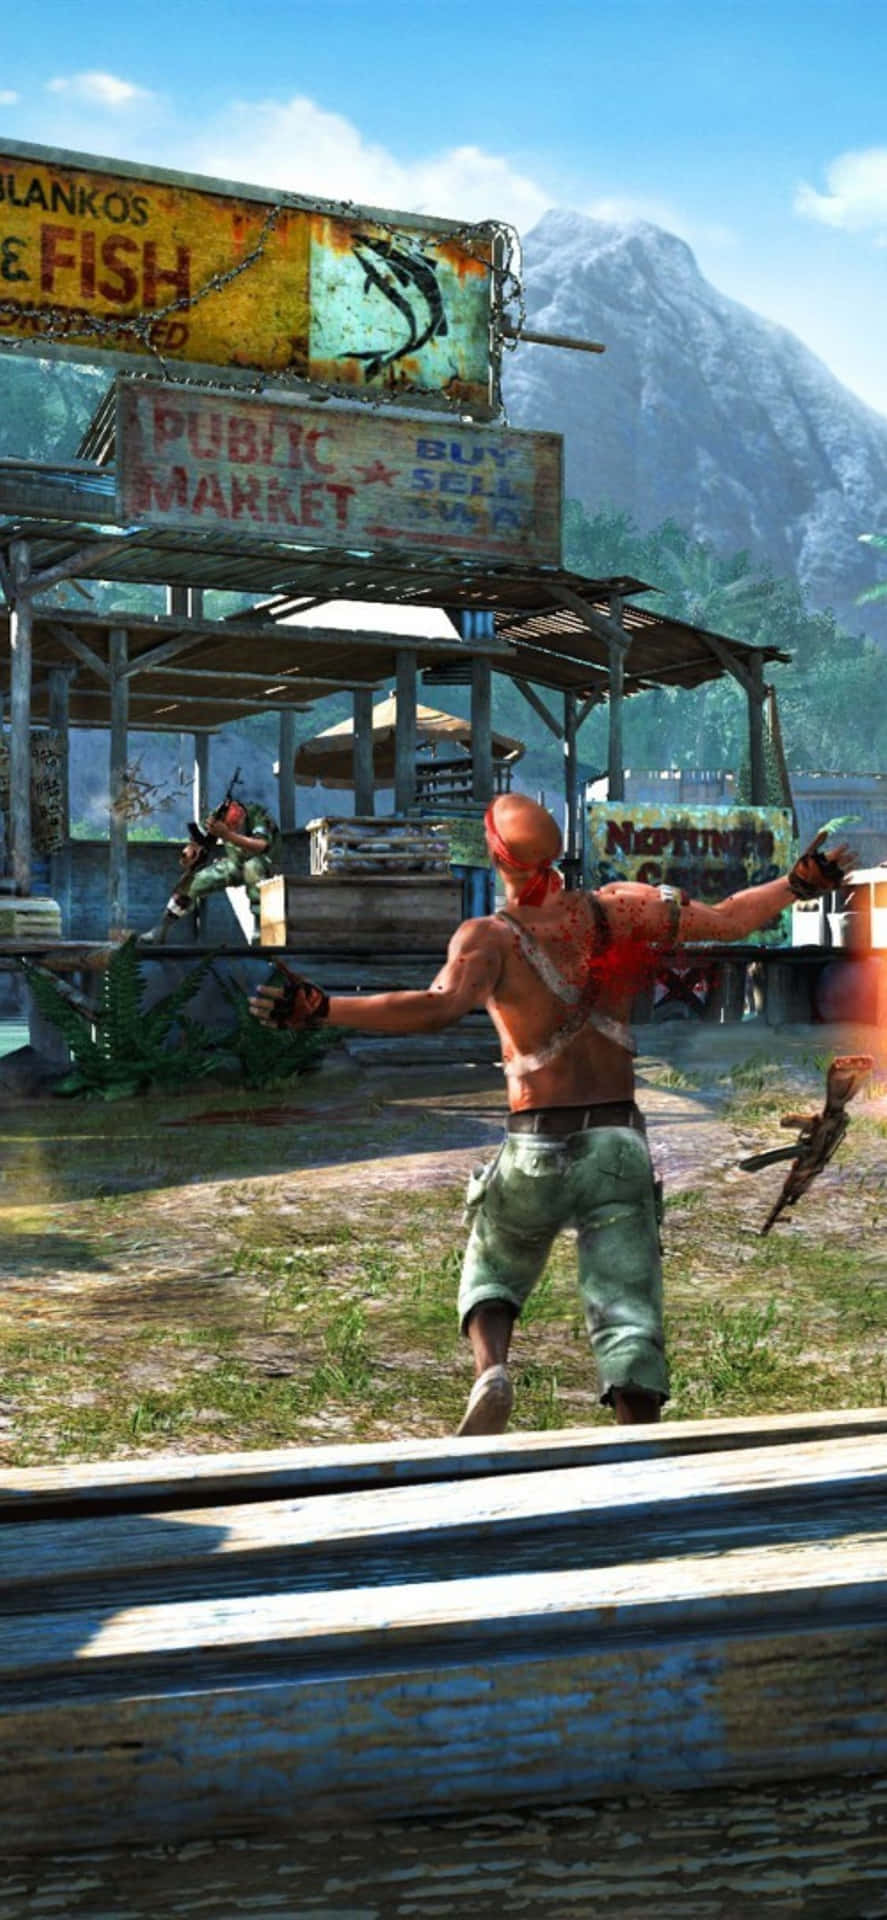 Fondode Pantalla De Hombre Disparando En Far Cry 3 Para Iphone X.